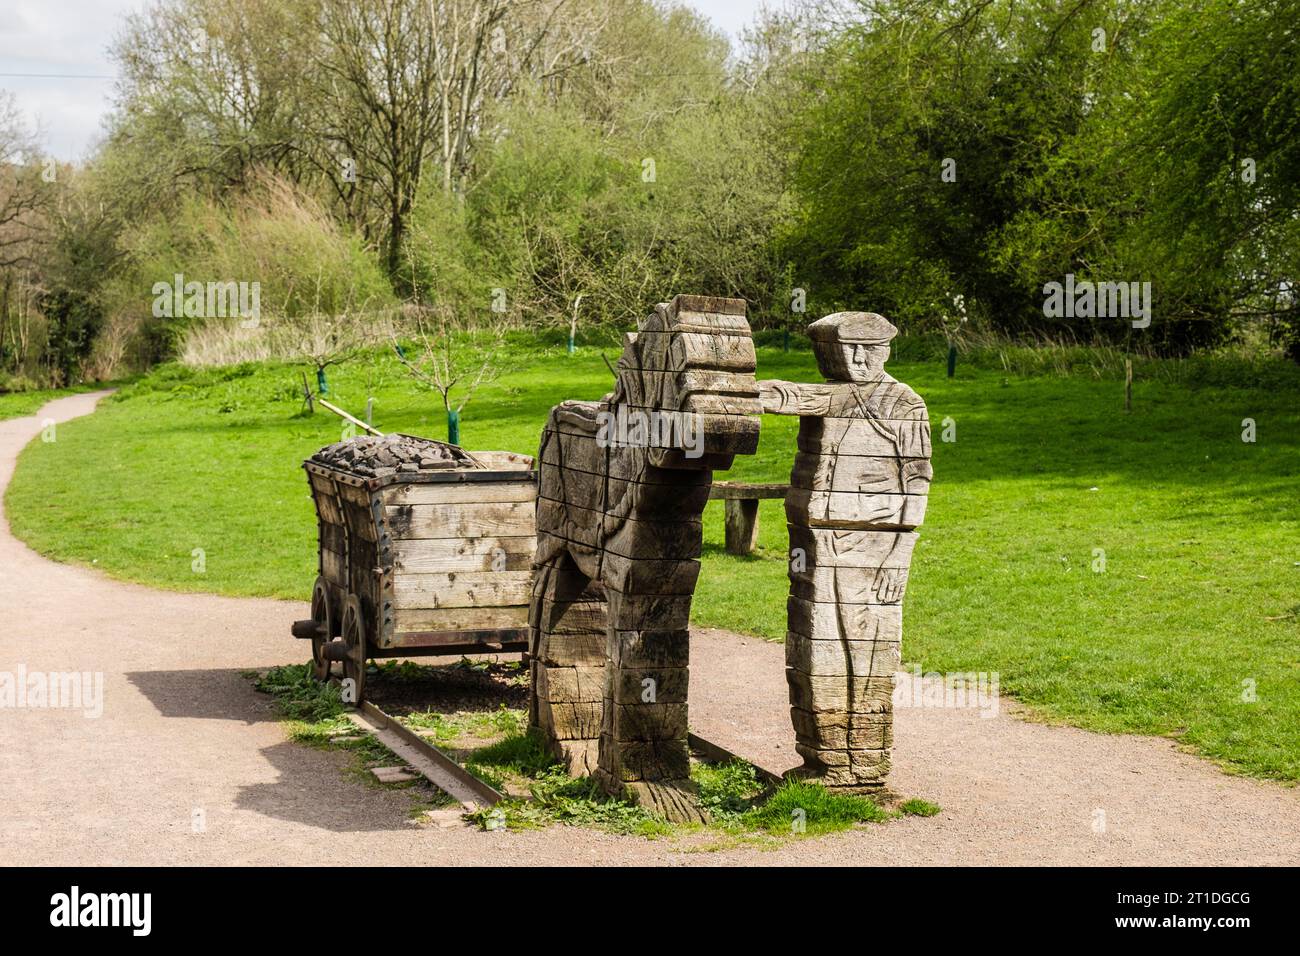 Infromazioni storiche e sculture in legno sul sentiero a Watton Wharf accanto al Monmouthshire e al Brecon Canal. Brecon (Aberhonddu) Powys Galles Regno Unito Foto Stock